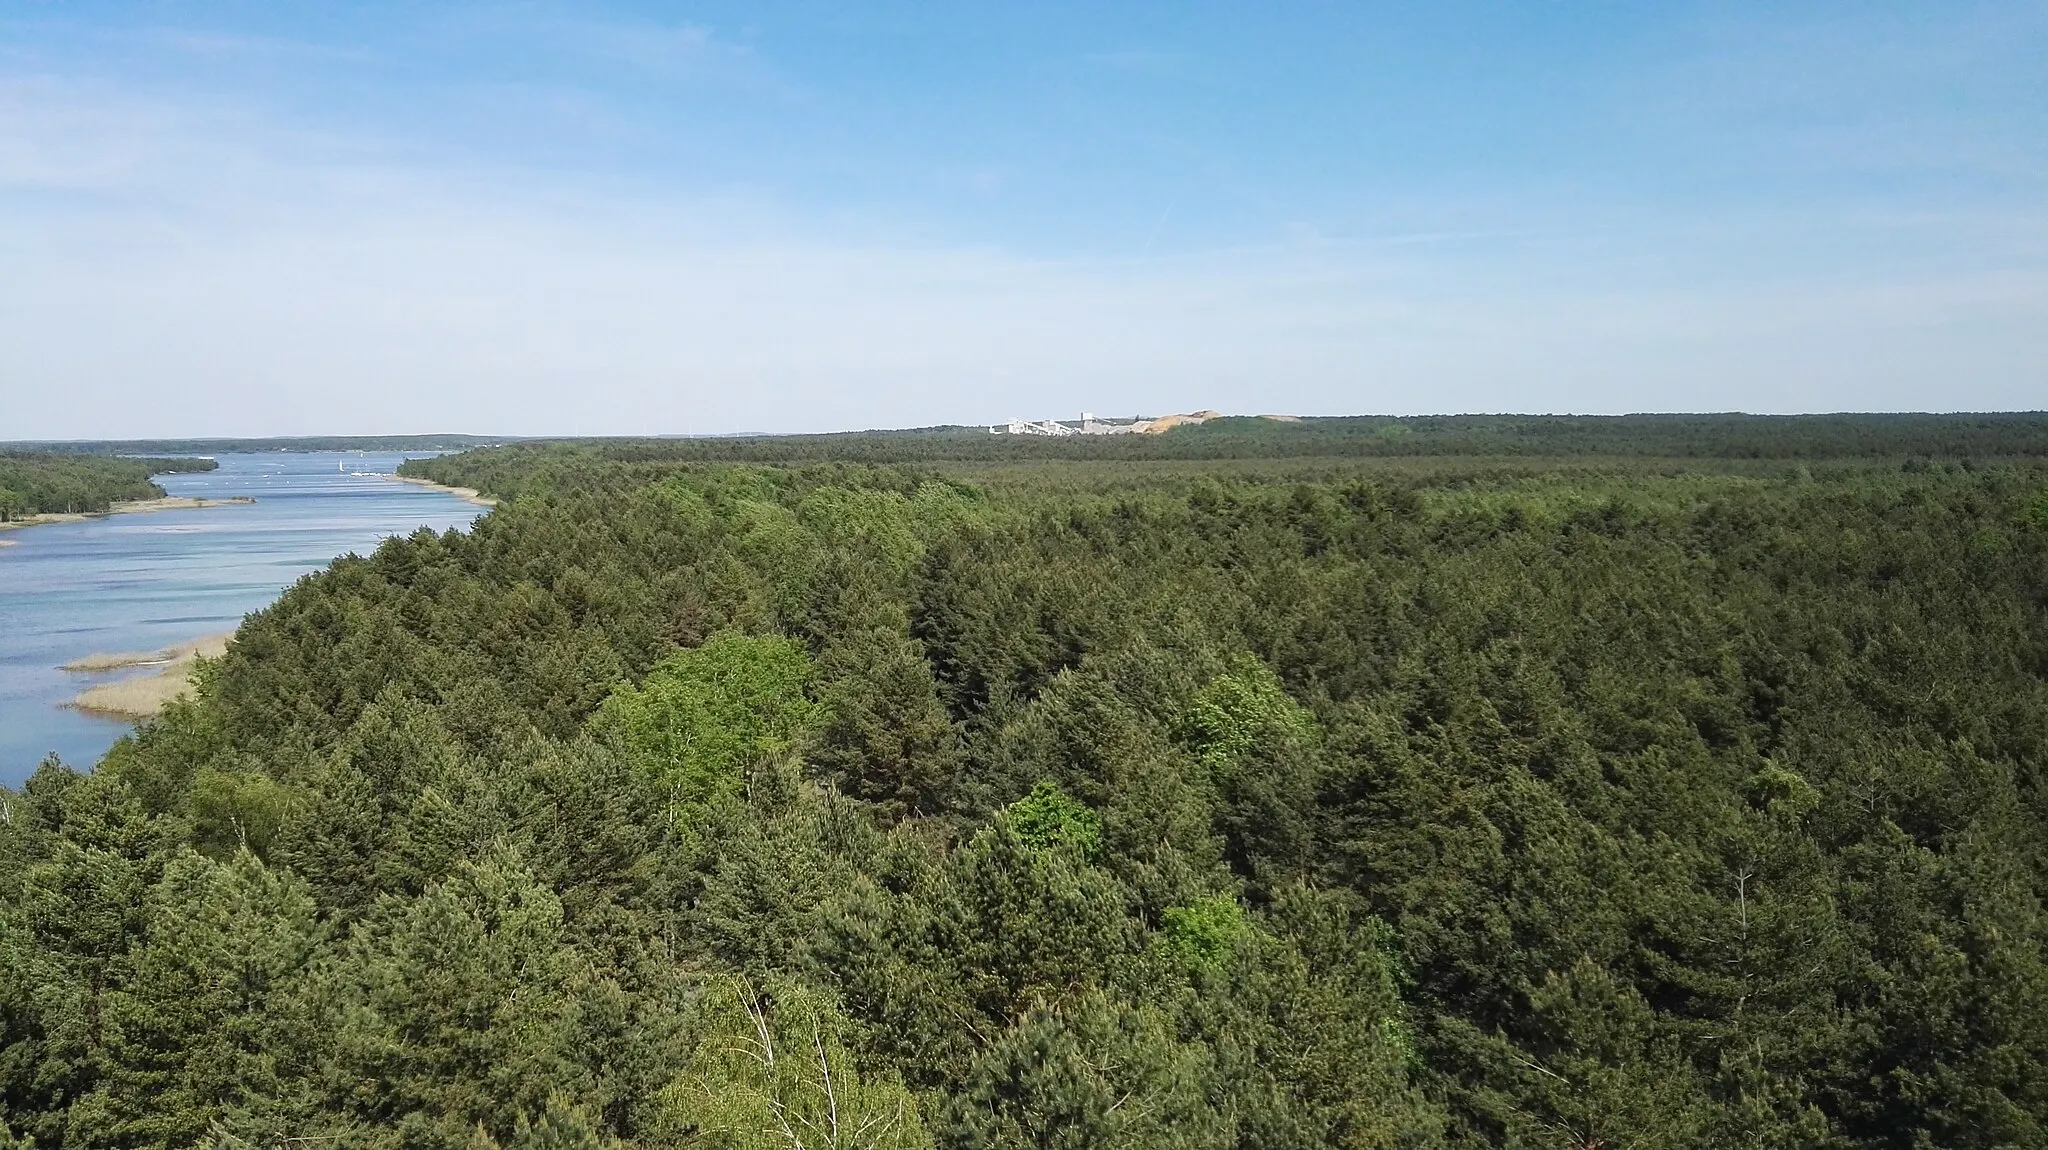 Photo showing: Blick vom Aussichtsturm am Senftenberger See auf den südlichen Bereich des Senftenberger Sees und die Insel, die als Naturschutzgebiet ausgewiesen ist